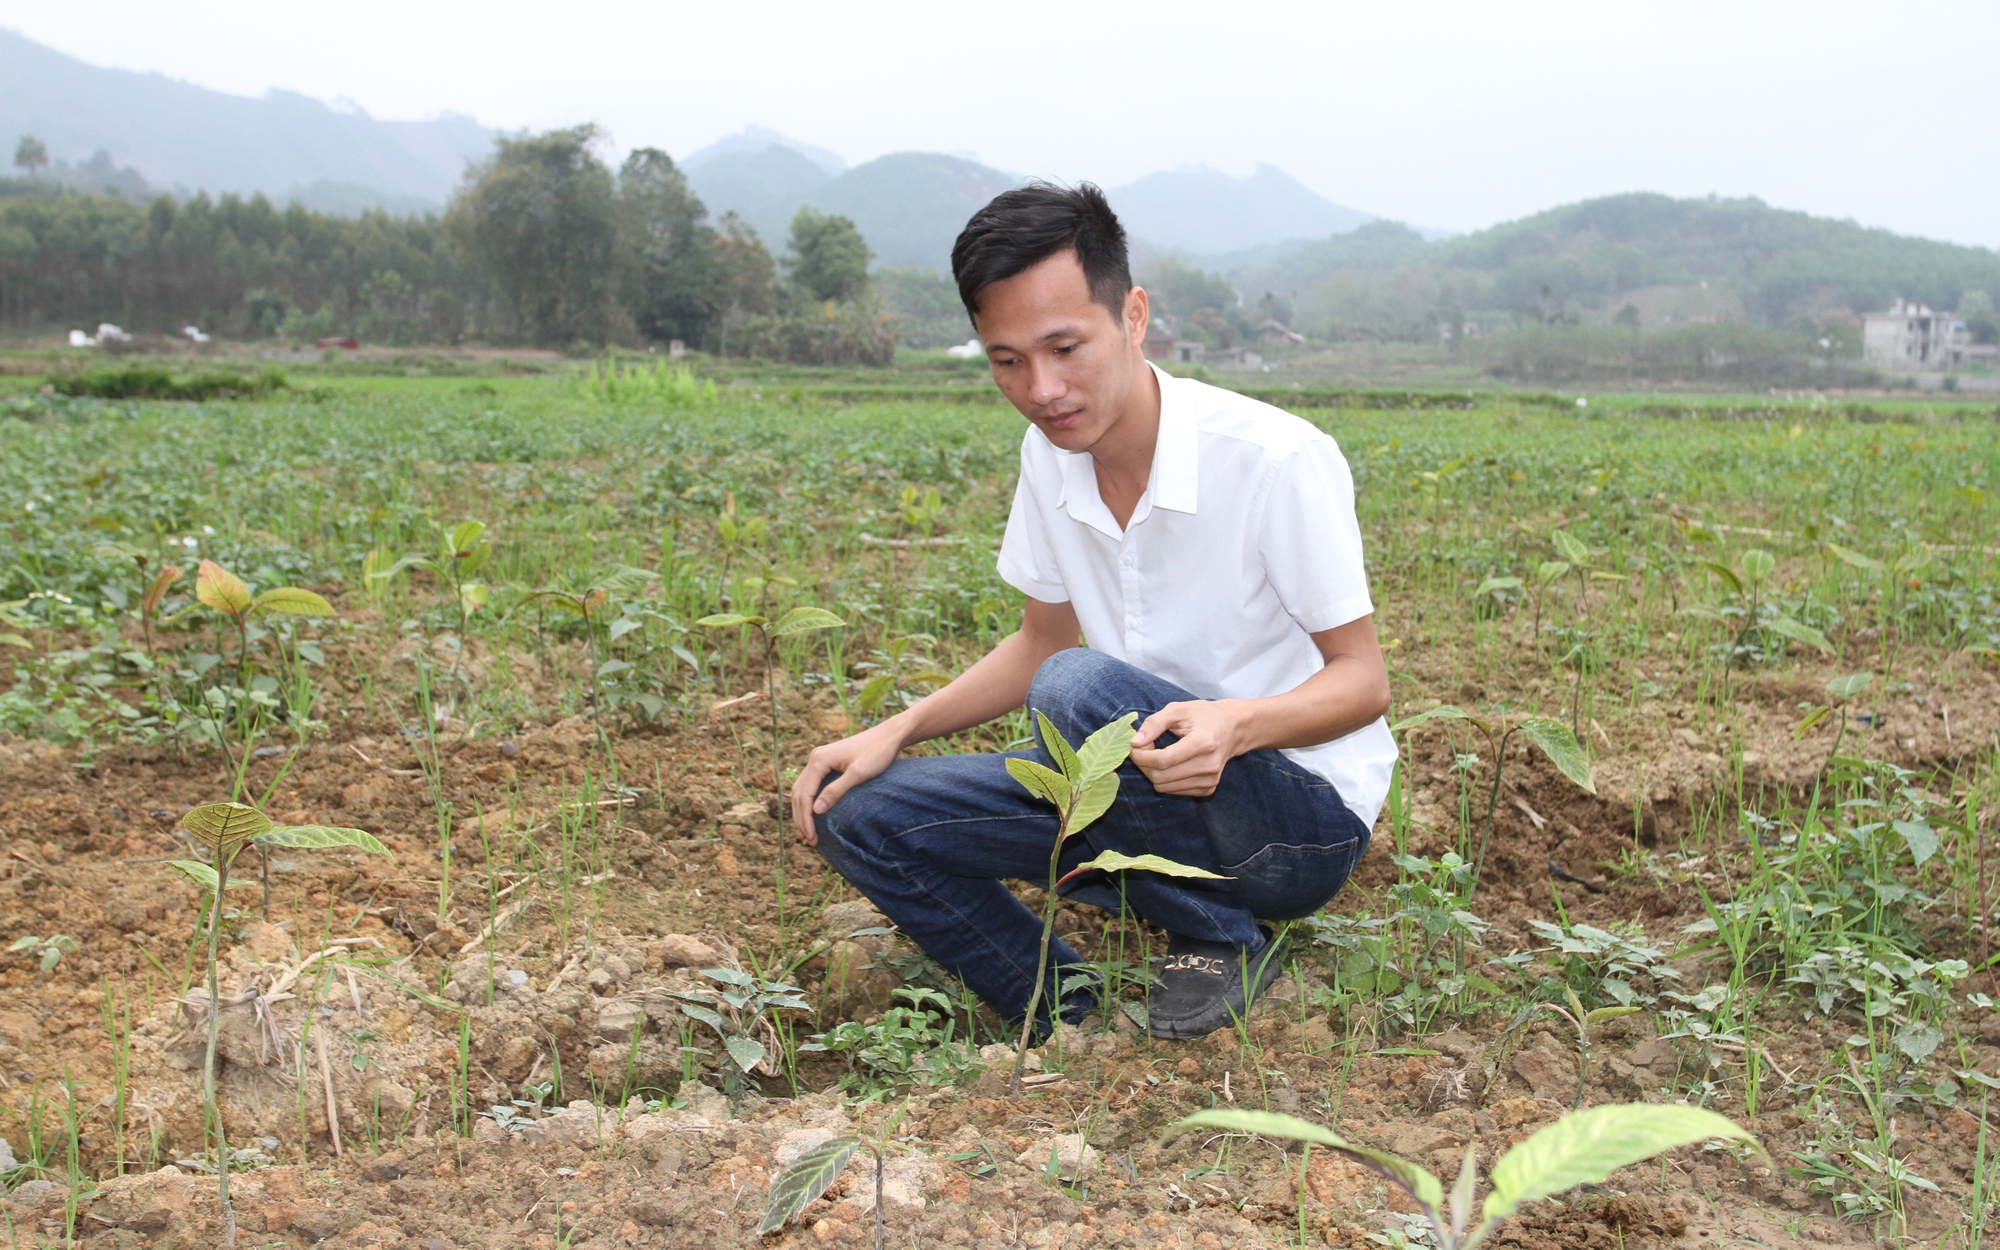 Đam mê trồng cây thuốc quý, 9X Thái Nguyên bỏ việc nhẹ lương cao về quê làm dược liệu OCOP